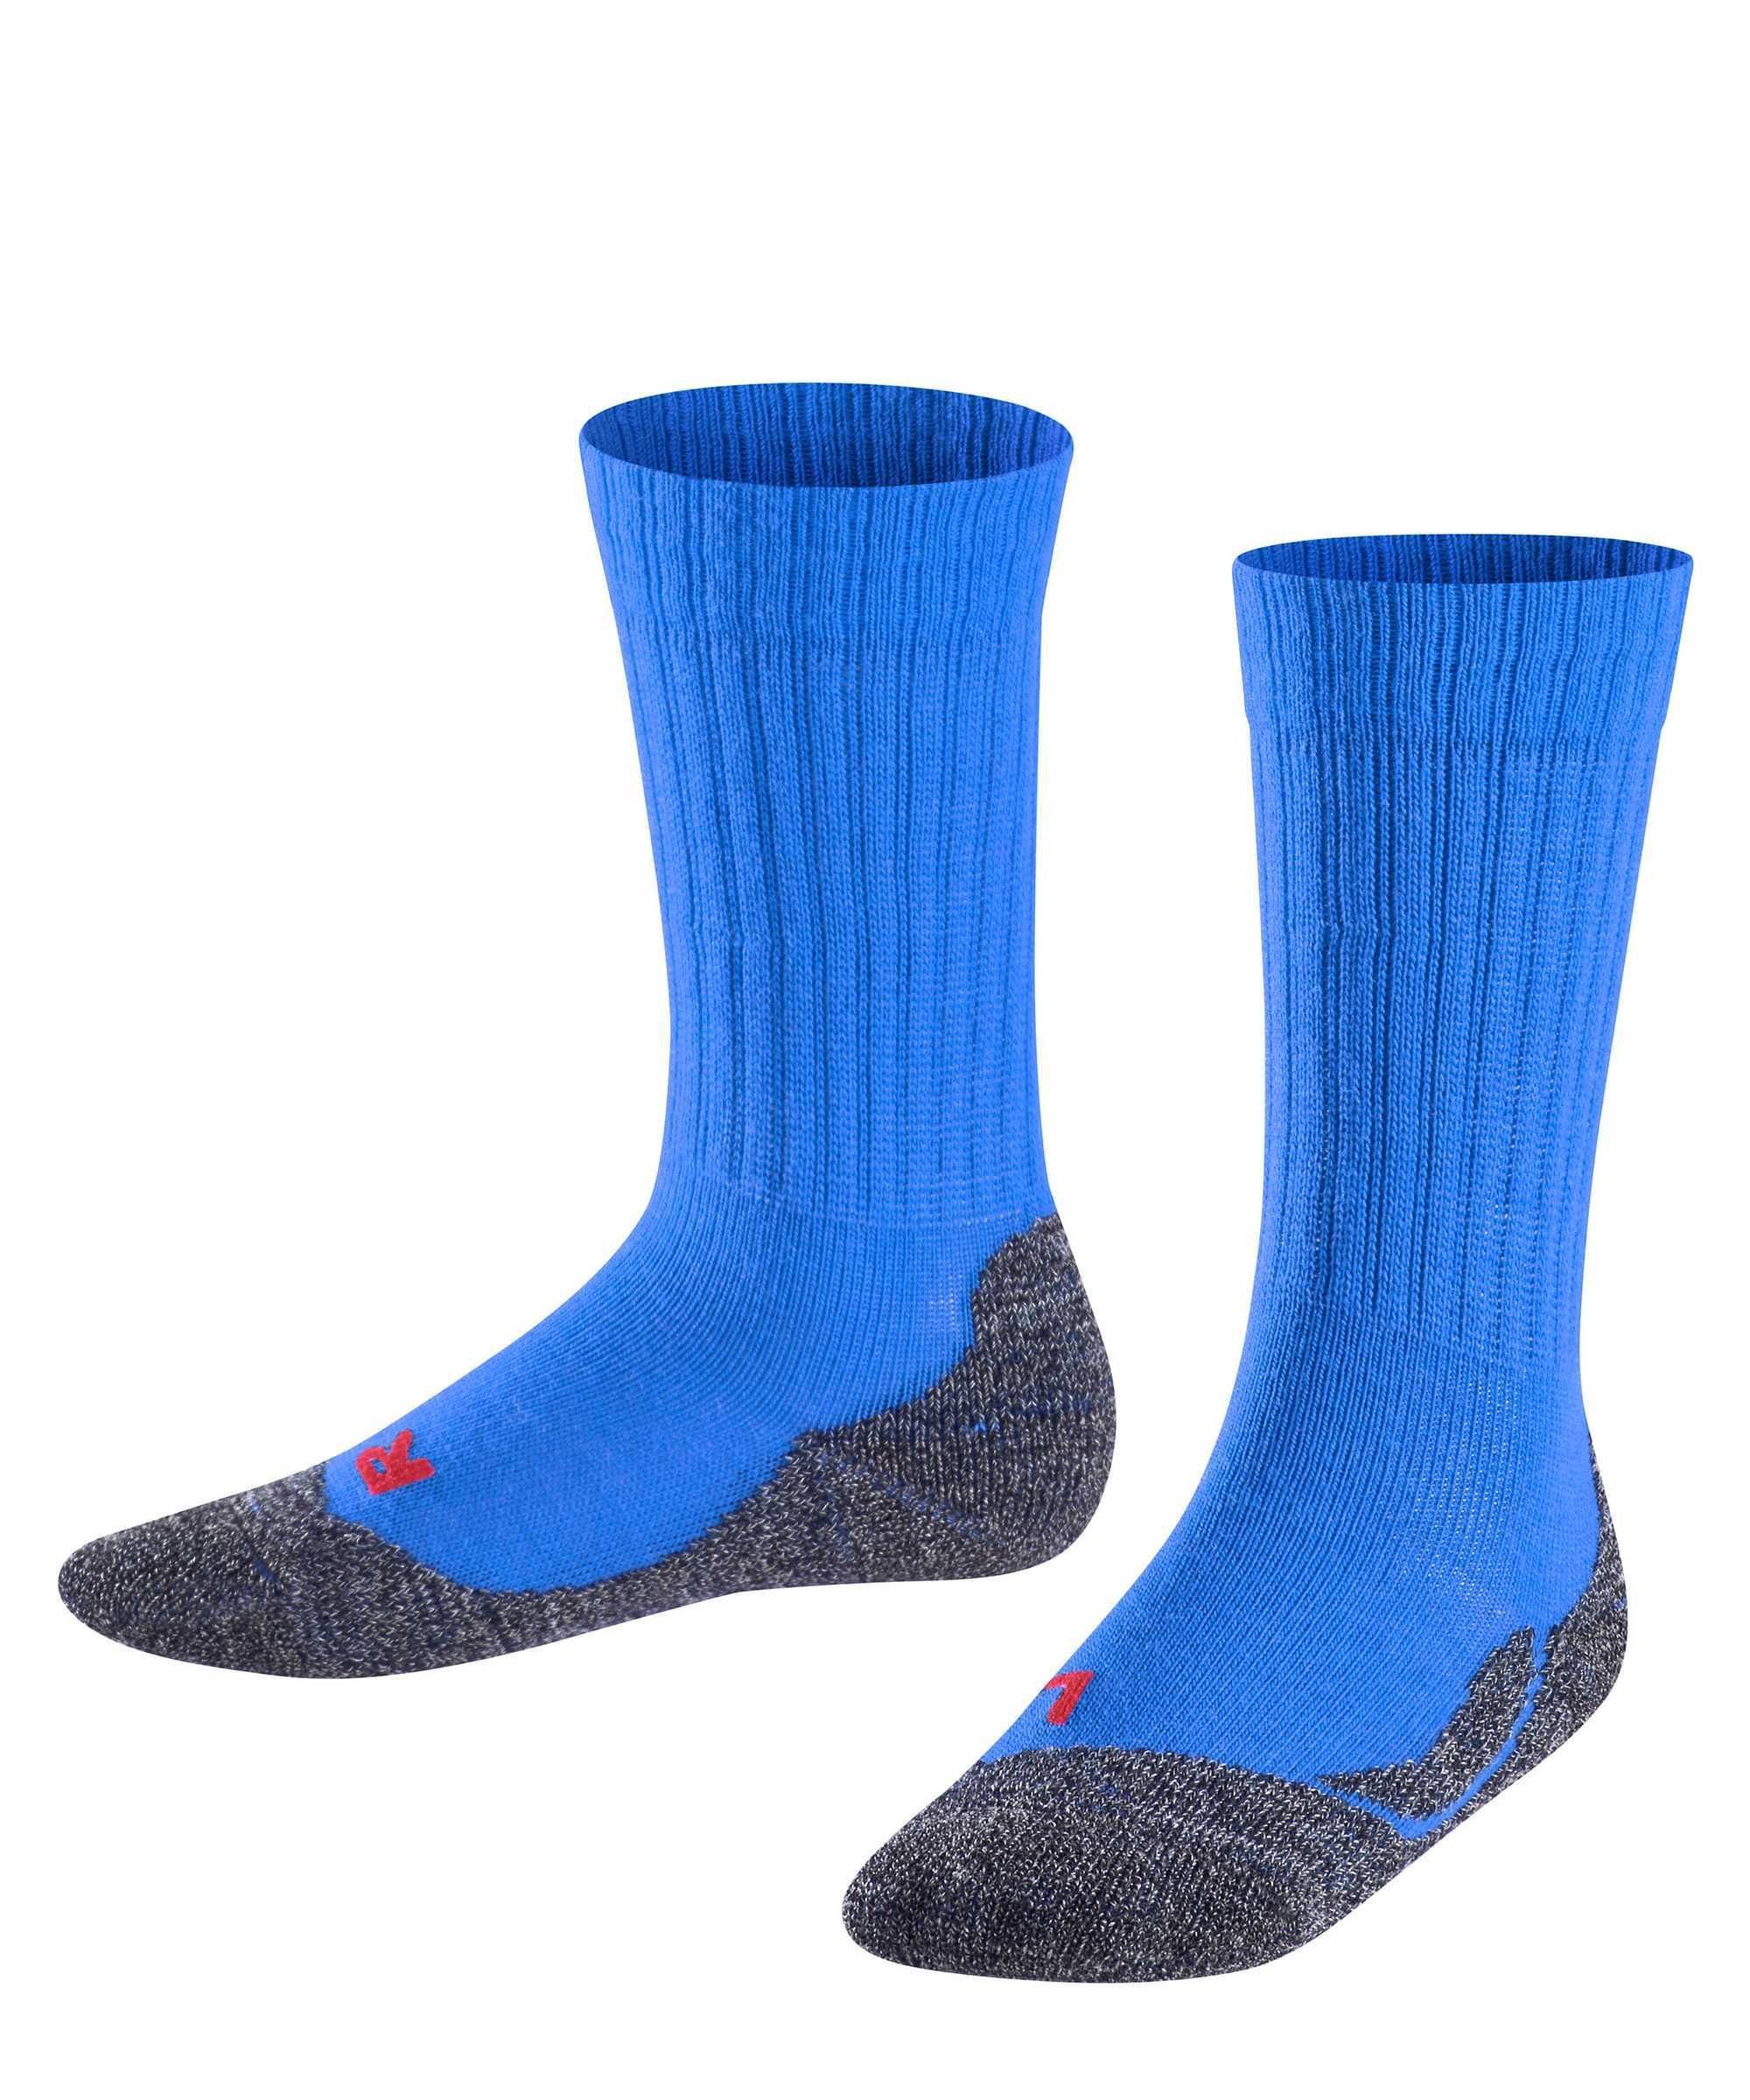 Blau Kurzsocken FALKE Warm, Freizeitsocken Active Socken Kinder -